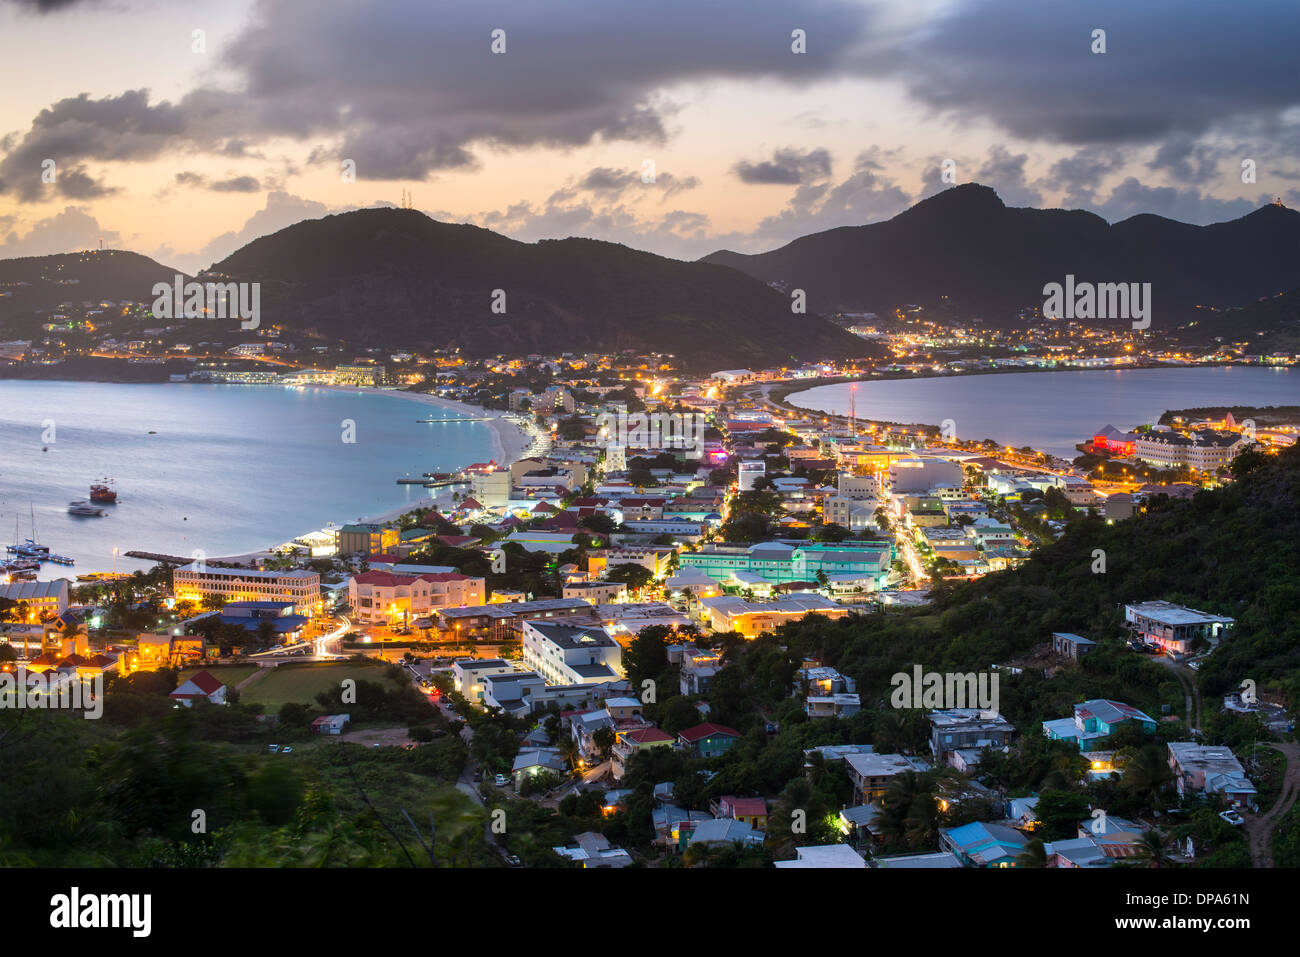 Philipsburg, Sint Maarten en el Caribe. Foto de stock